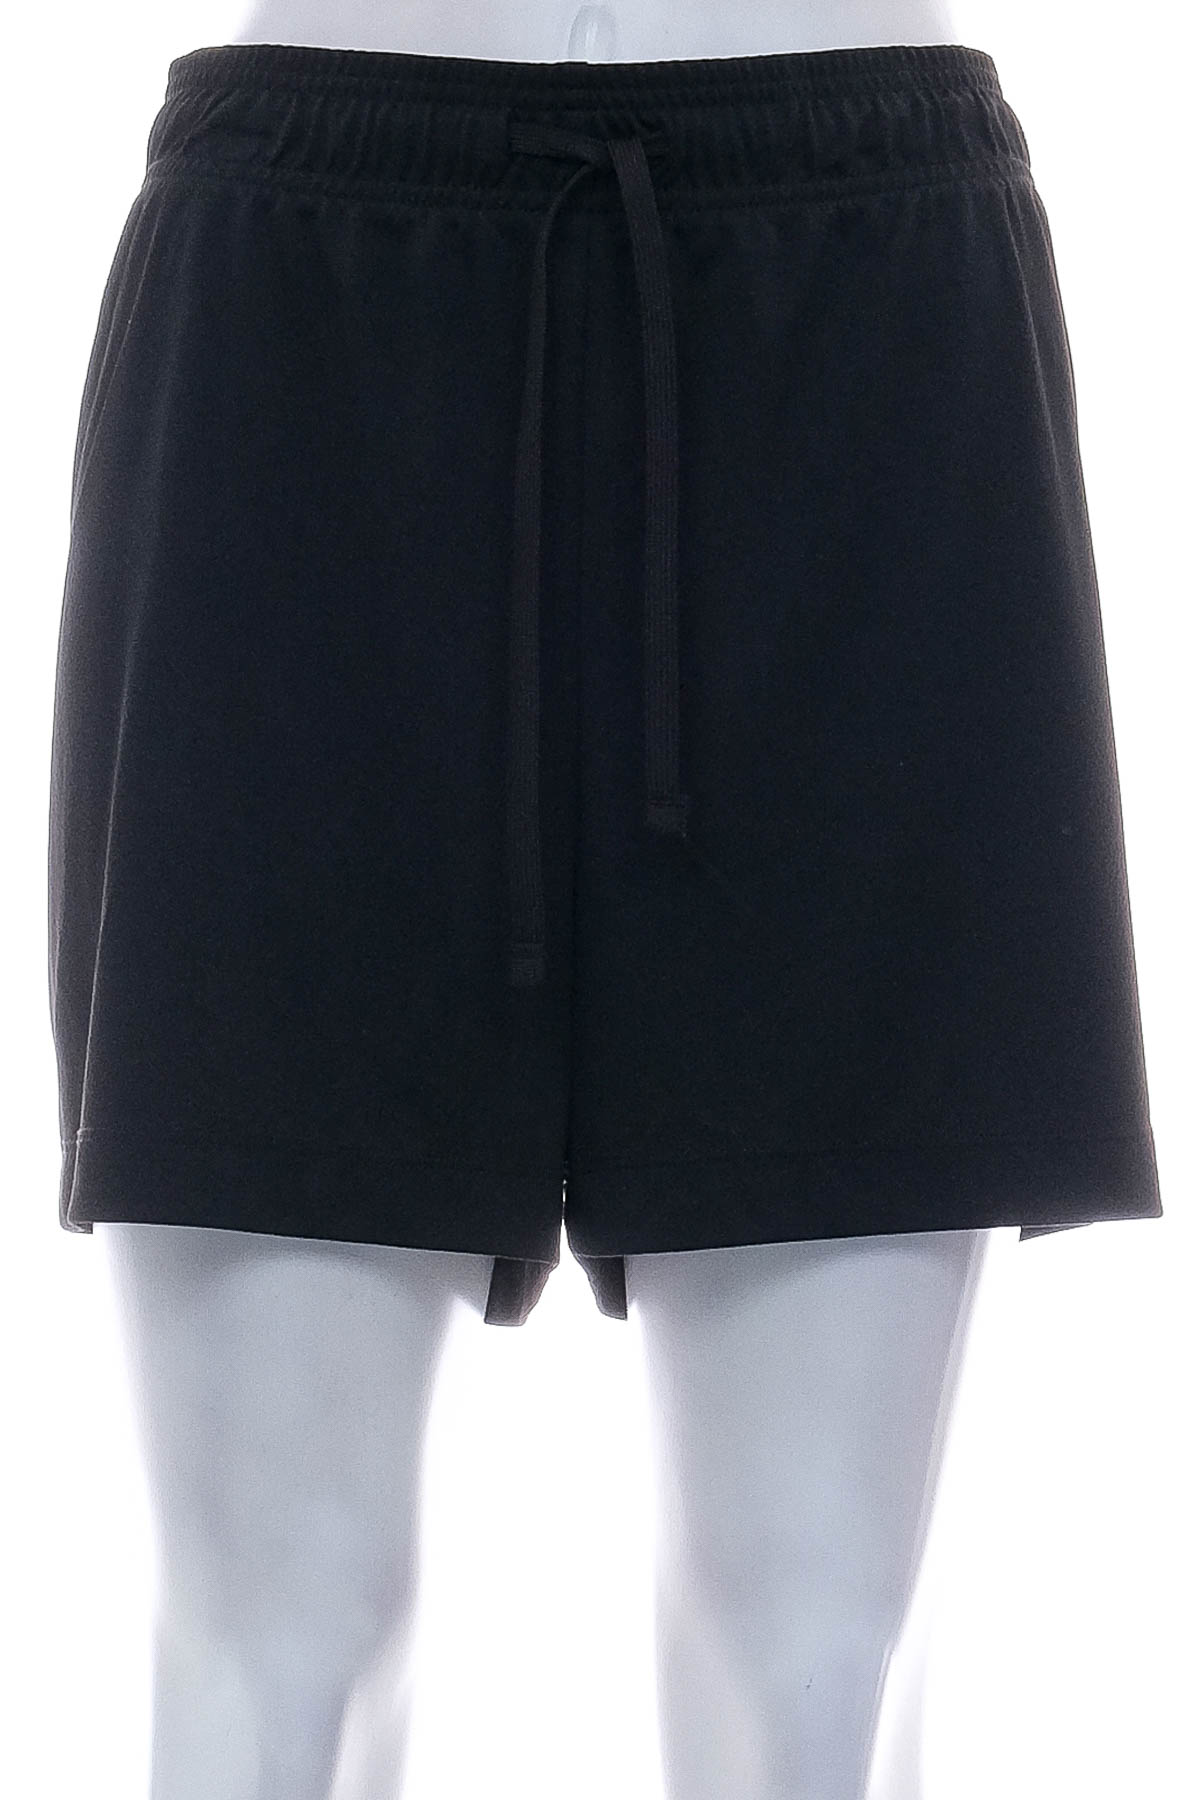 Female shorts - Crivit - 0